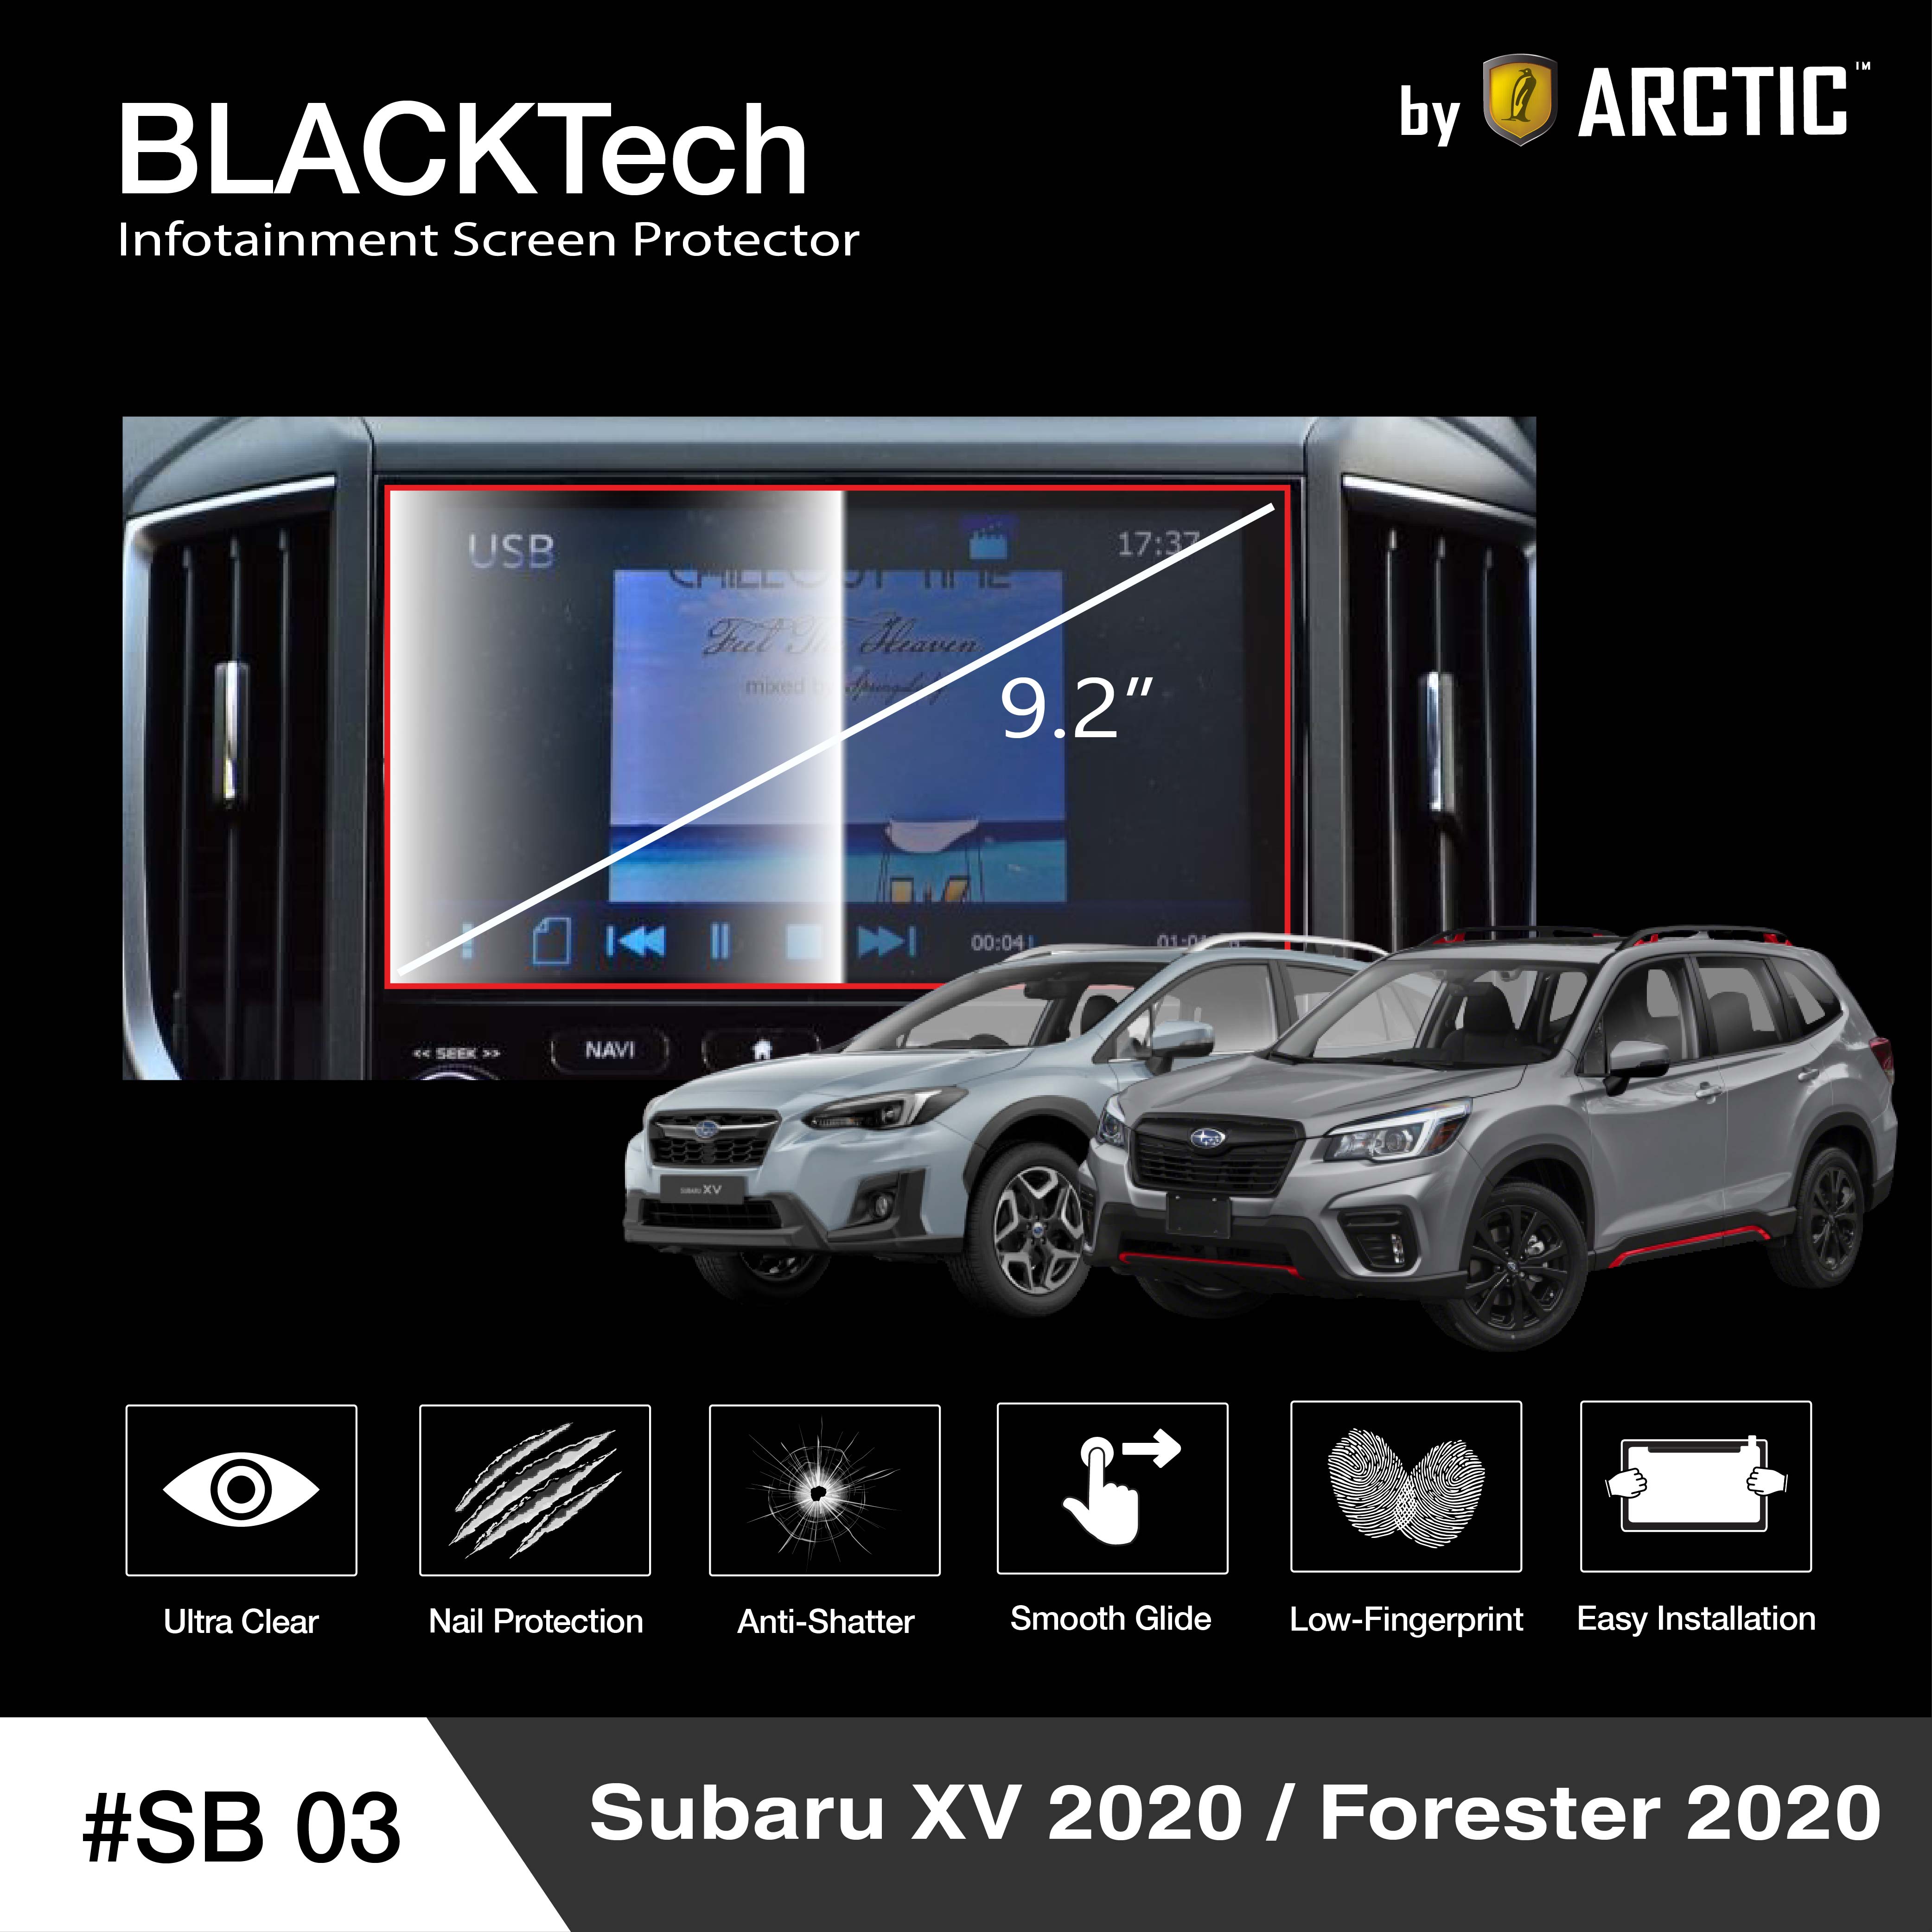 ฟิล์มกันรอยหน้าจอรถยนต์ Subaru XV 2020 / Forester 2020 จอขนาด 9.2 นิ้ว - BLACKTech by ARCTIC